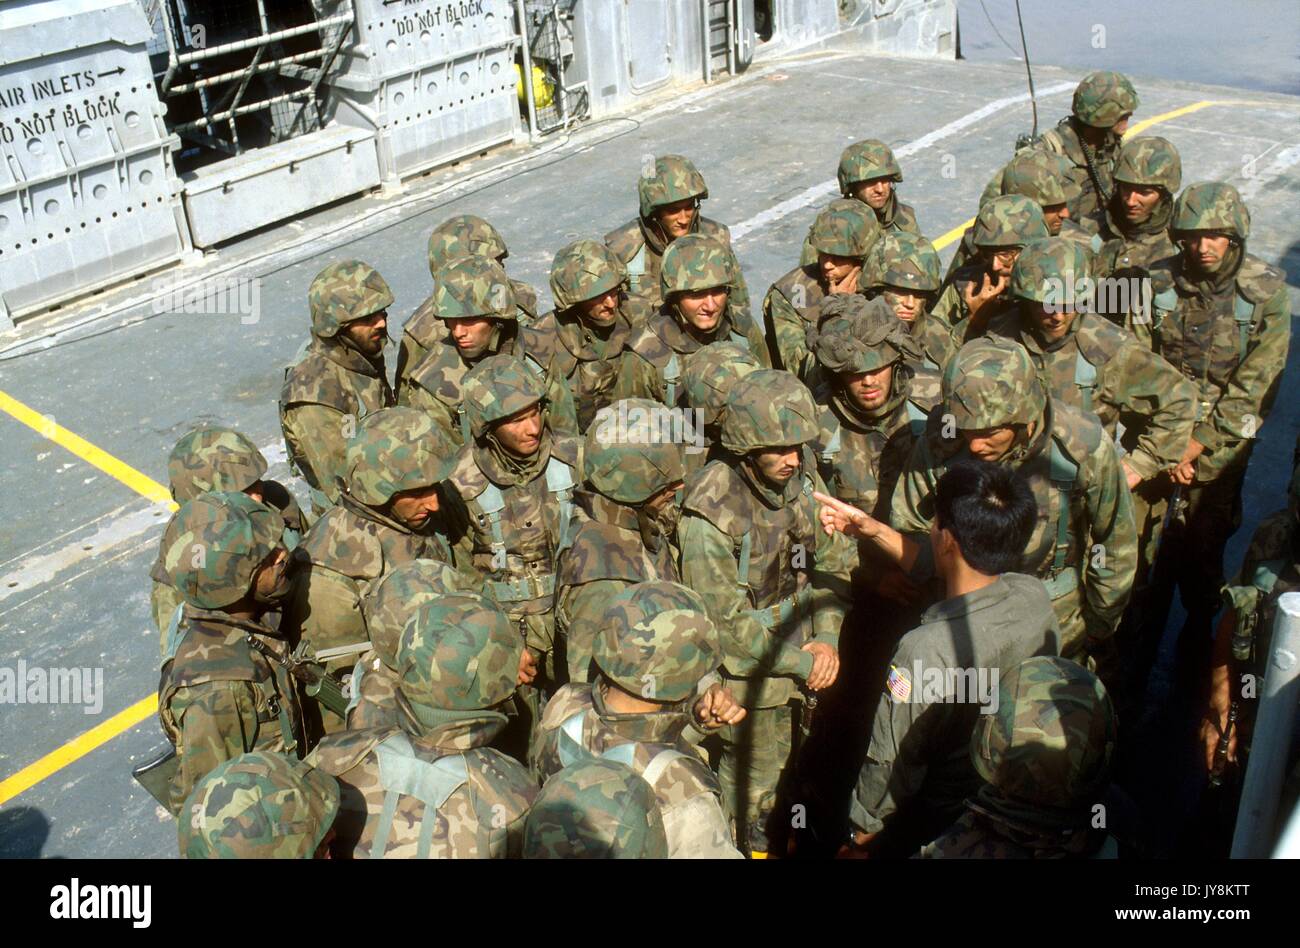 L'infanterie de la marine espagnole lors des exercices de l'OTAN à CapoTeulada (Sardaigne, Italie) Banque D'Images